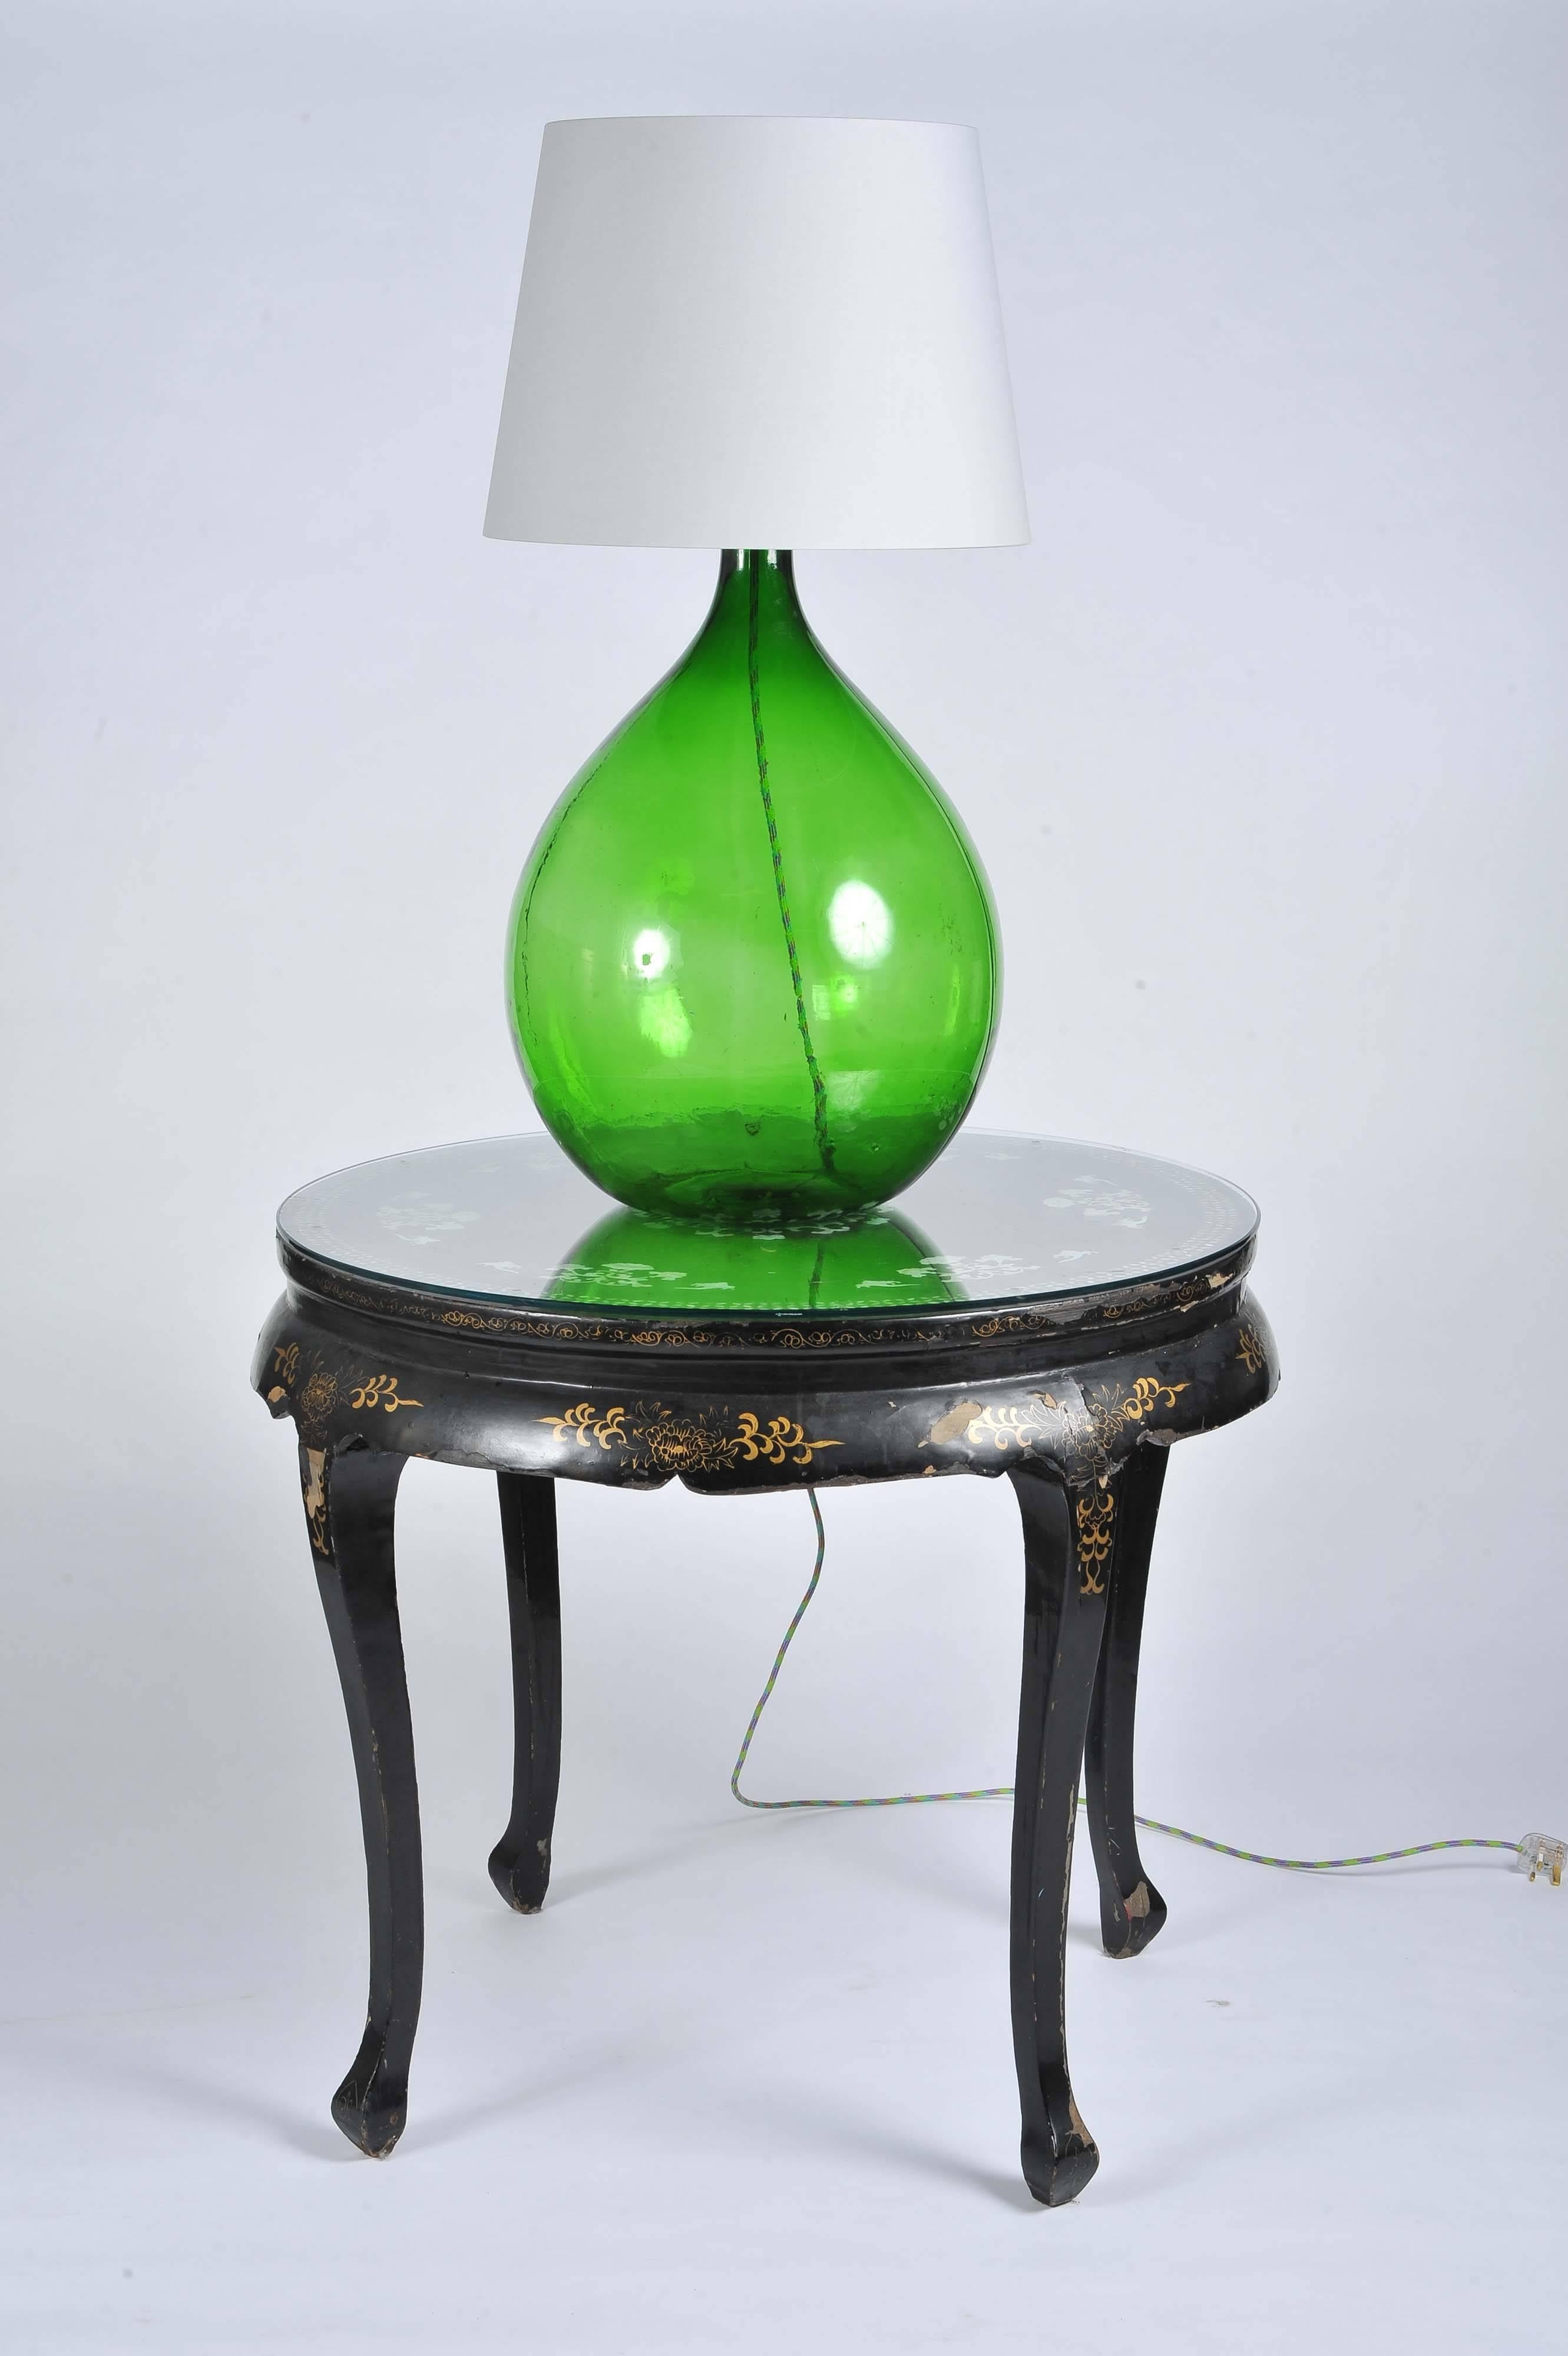 Pair of Vintage Handmade Green Demijohn Glass Bottles Table/Floor Lamps 1